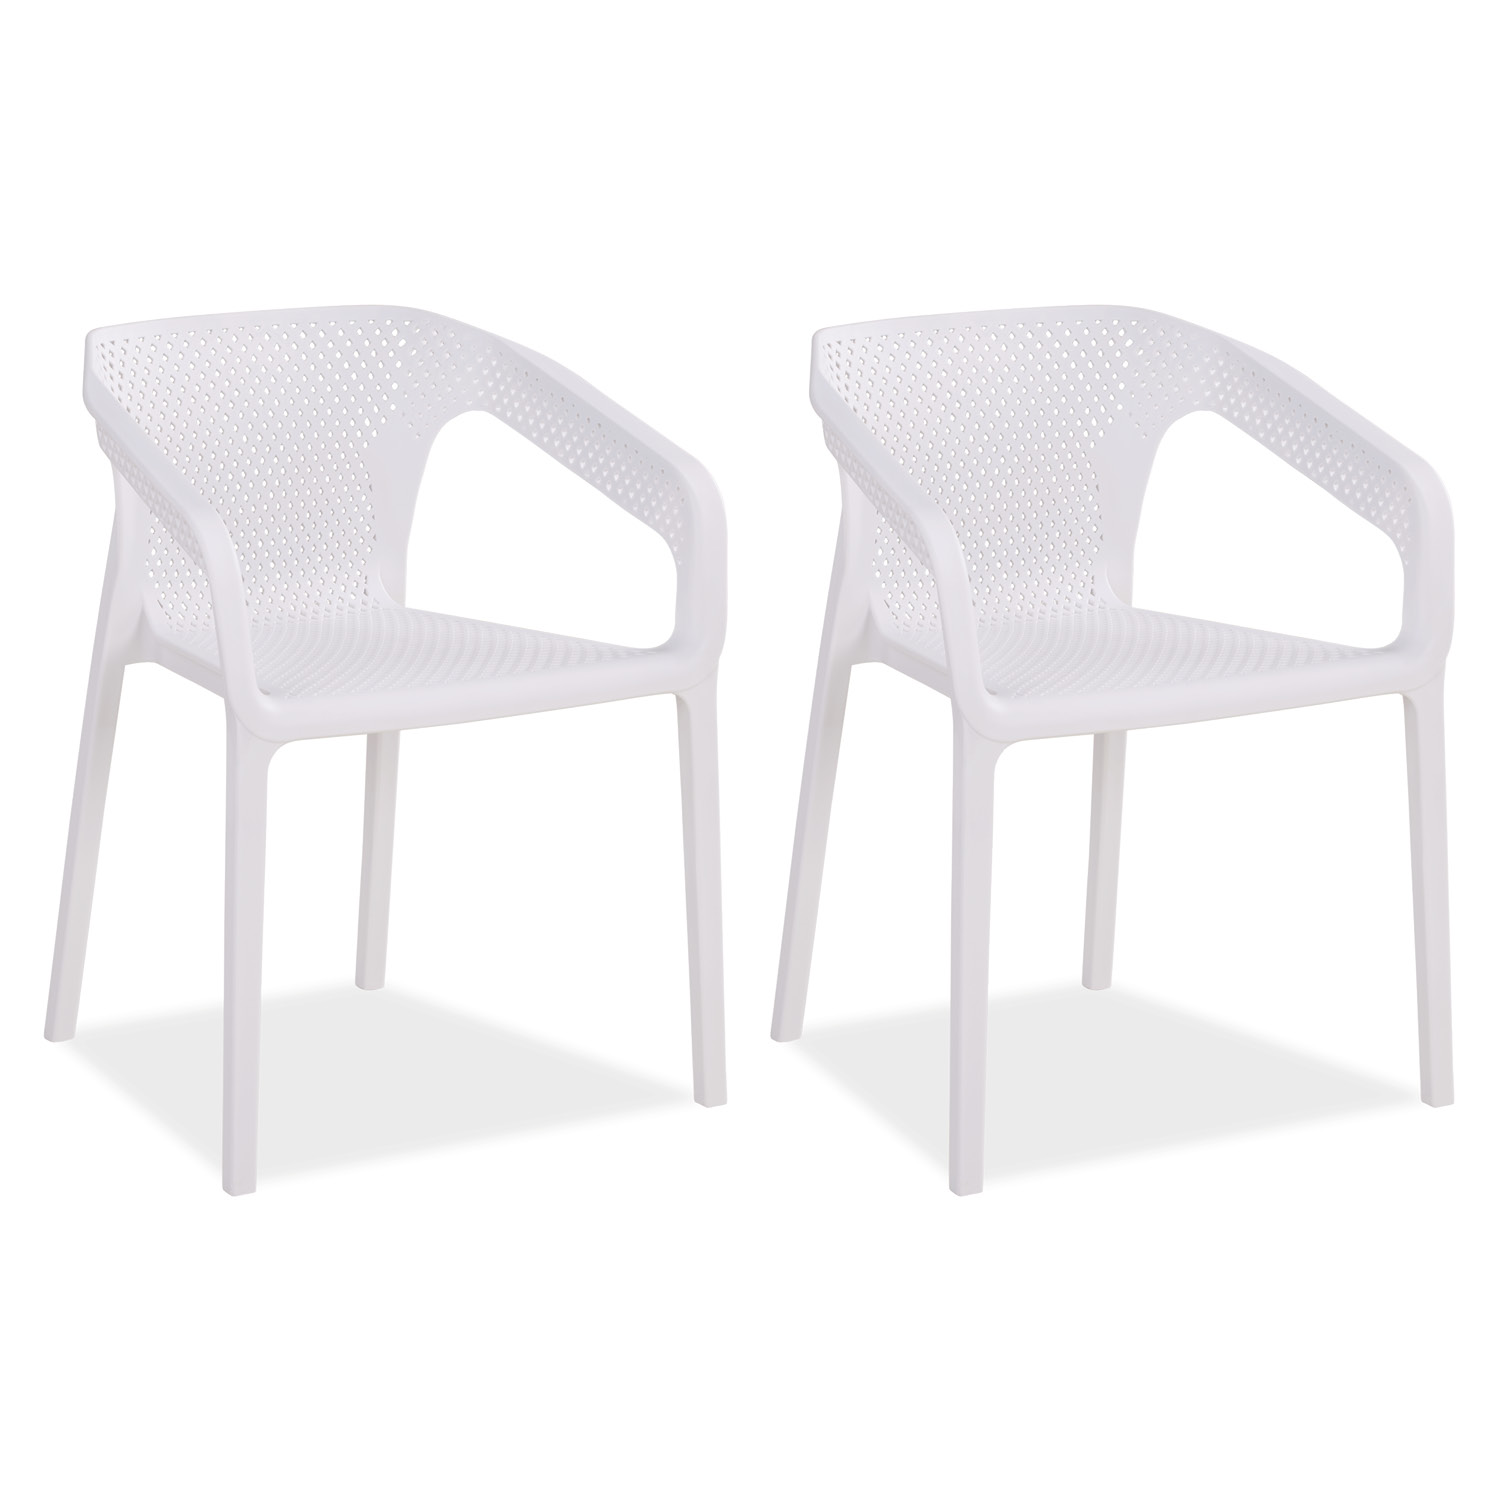 Gartenstuhl mit Armlehnen 2er Set Gartensessel Weiß Stühle Kunststoff Stapelstühle Balkonstuhl Outdoor-Stuhl